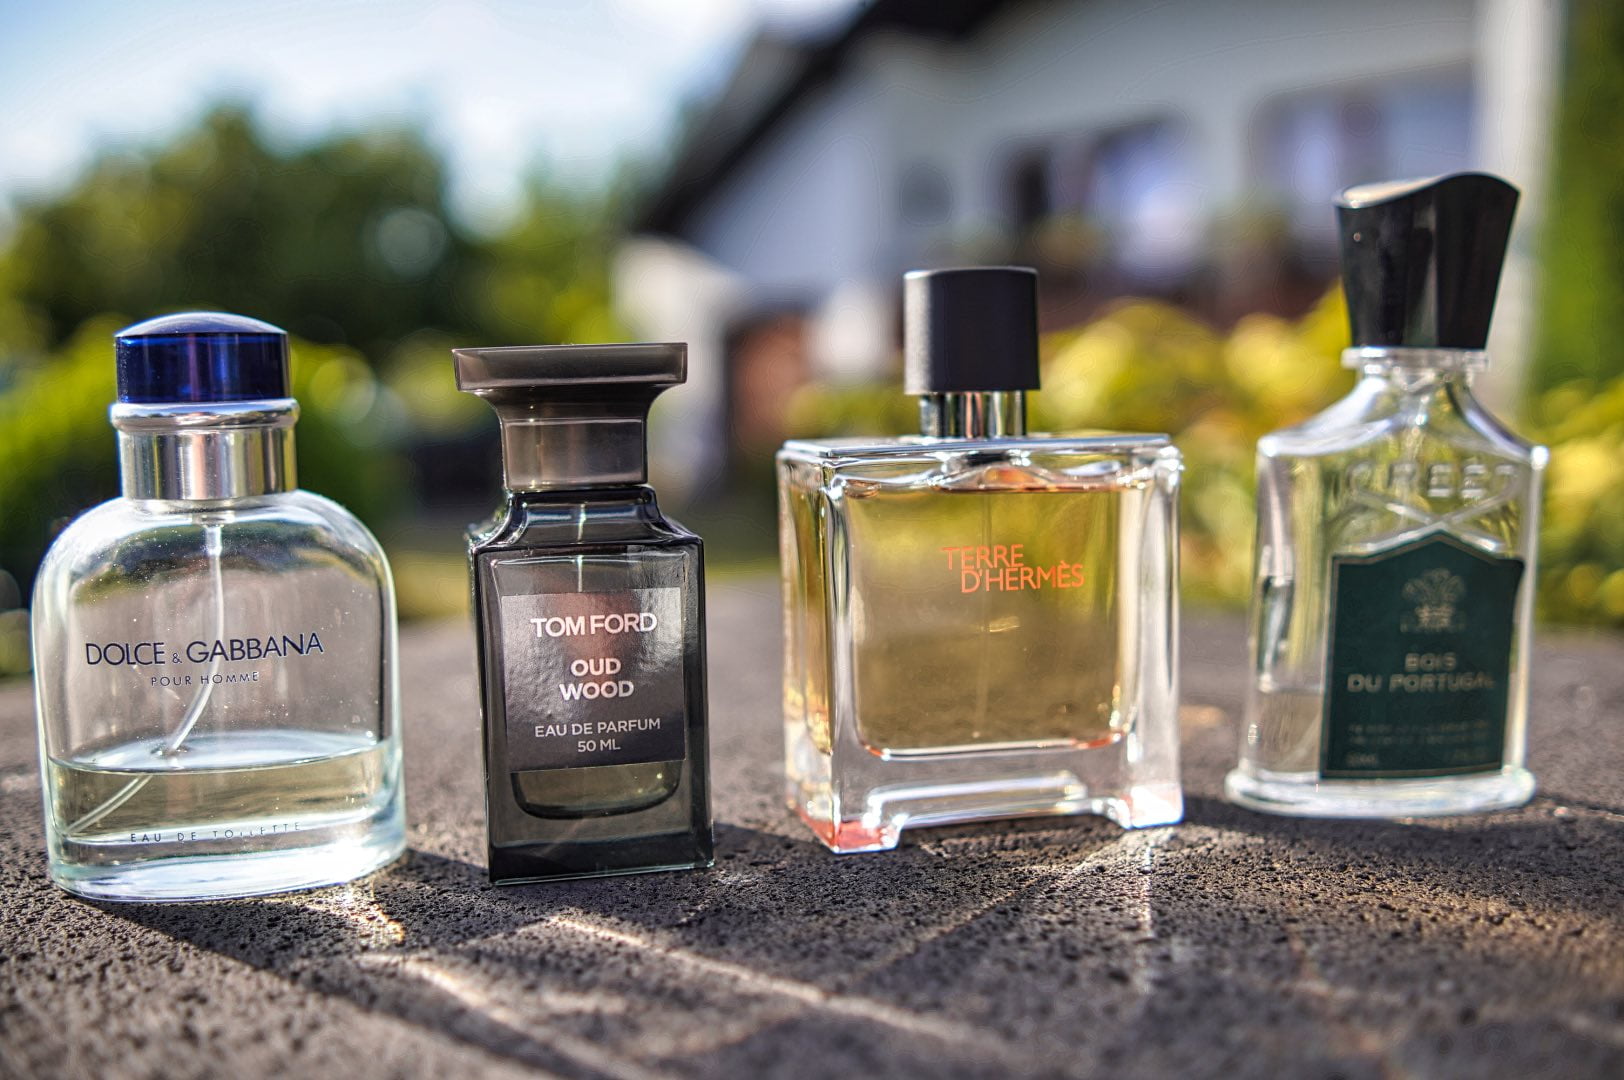 Good perfume choices for senior men